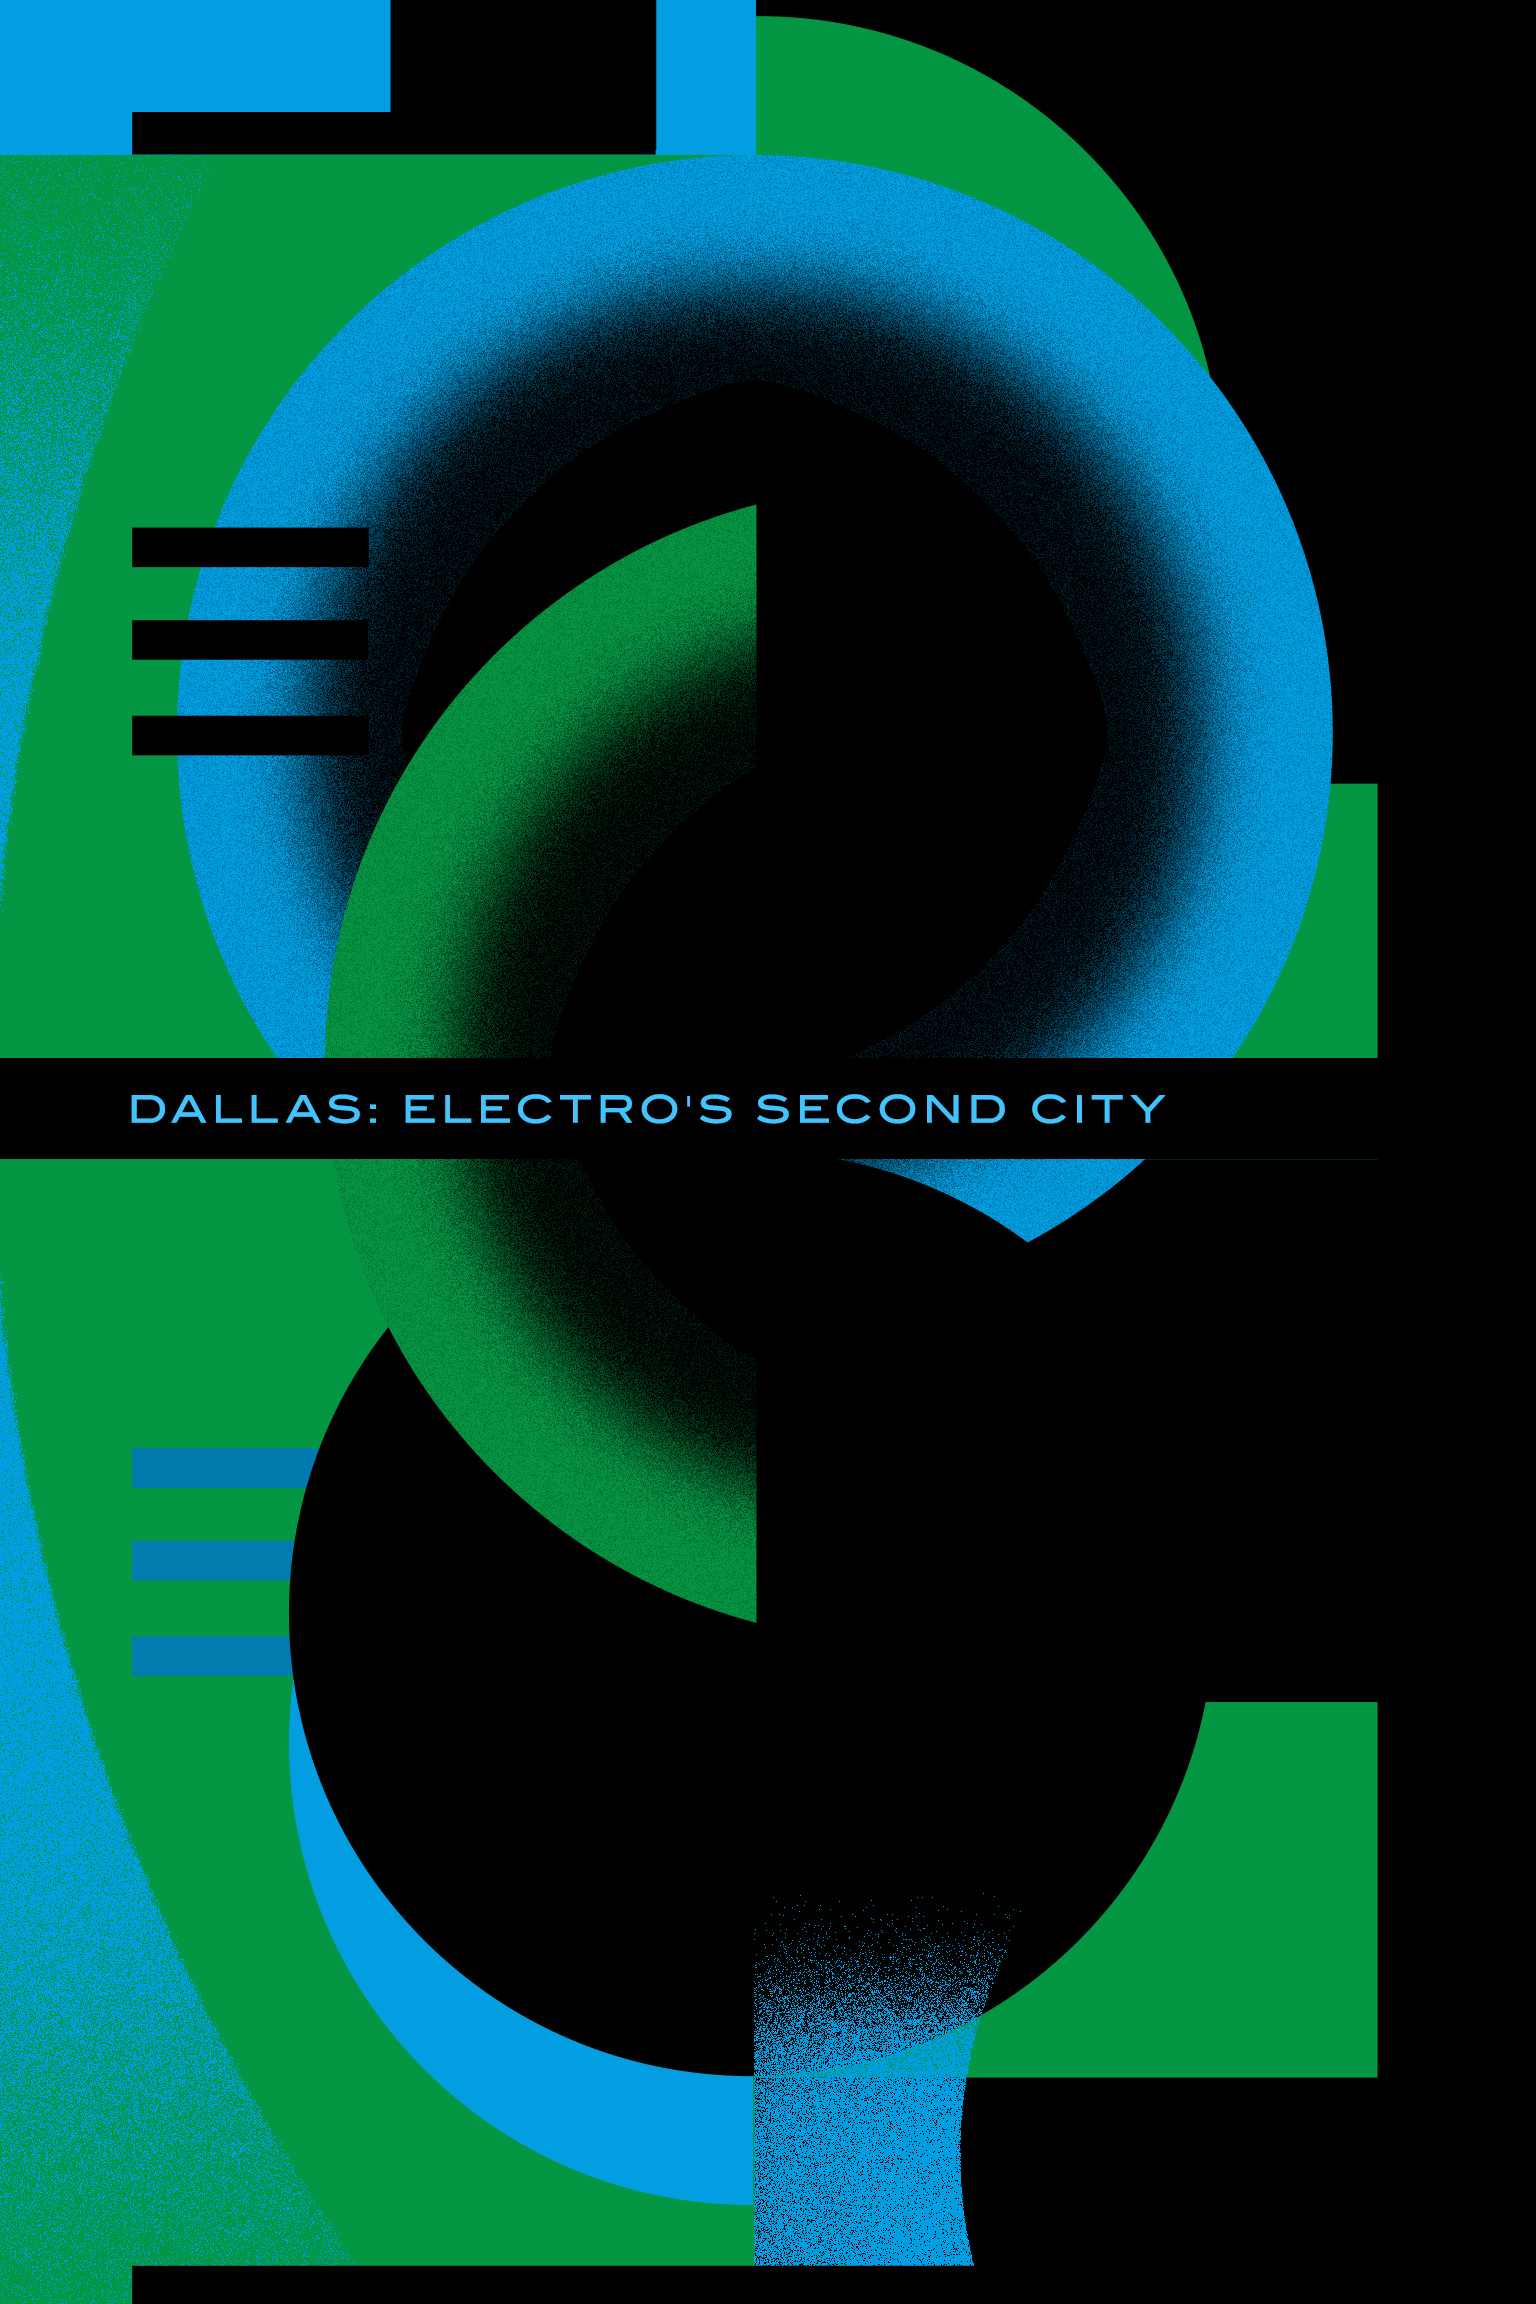 Dallas: Electro's second city